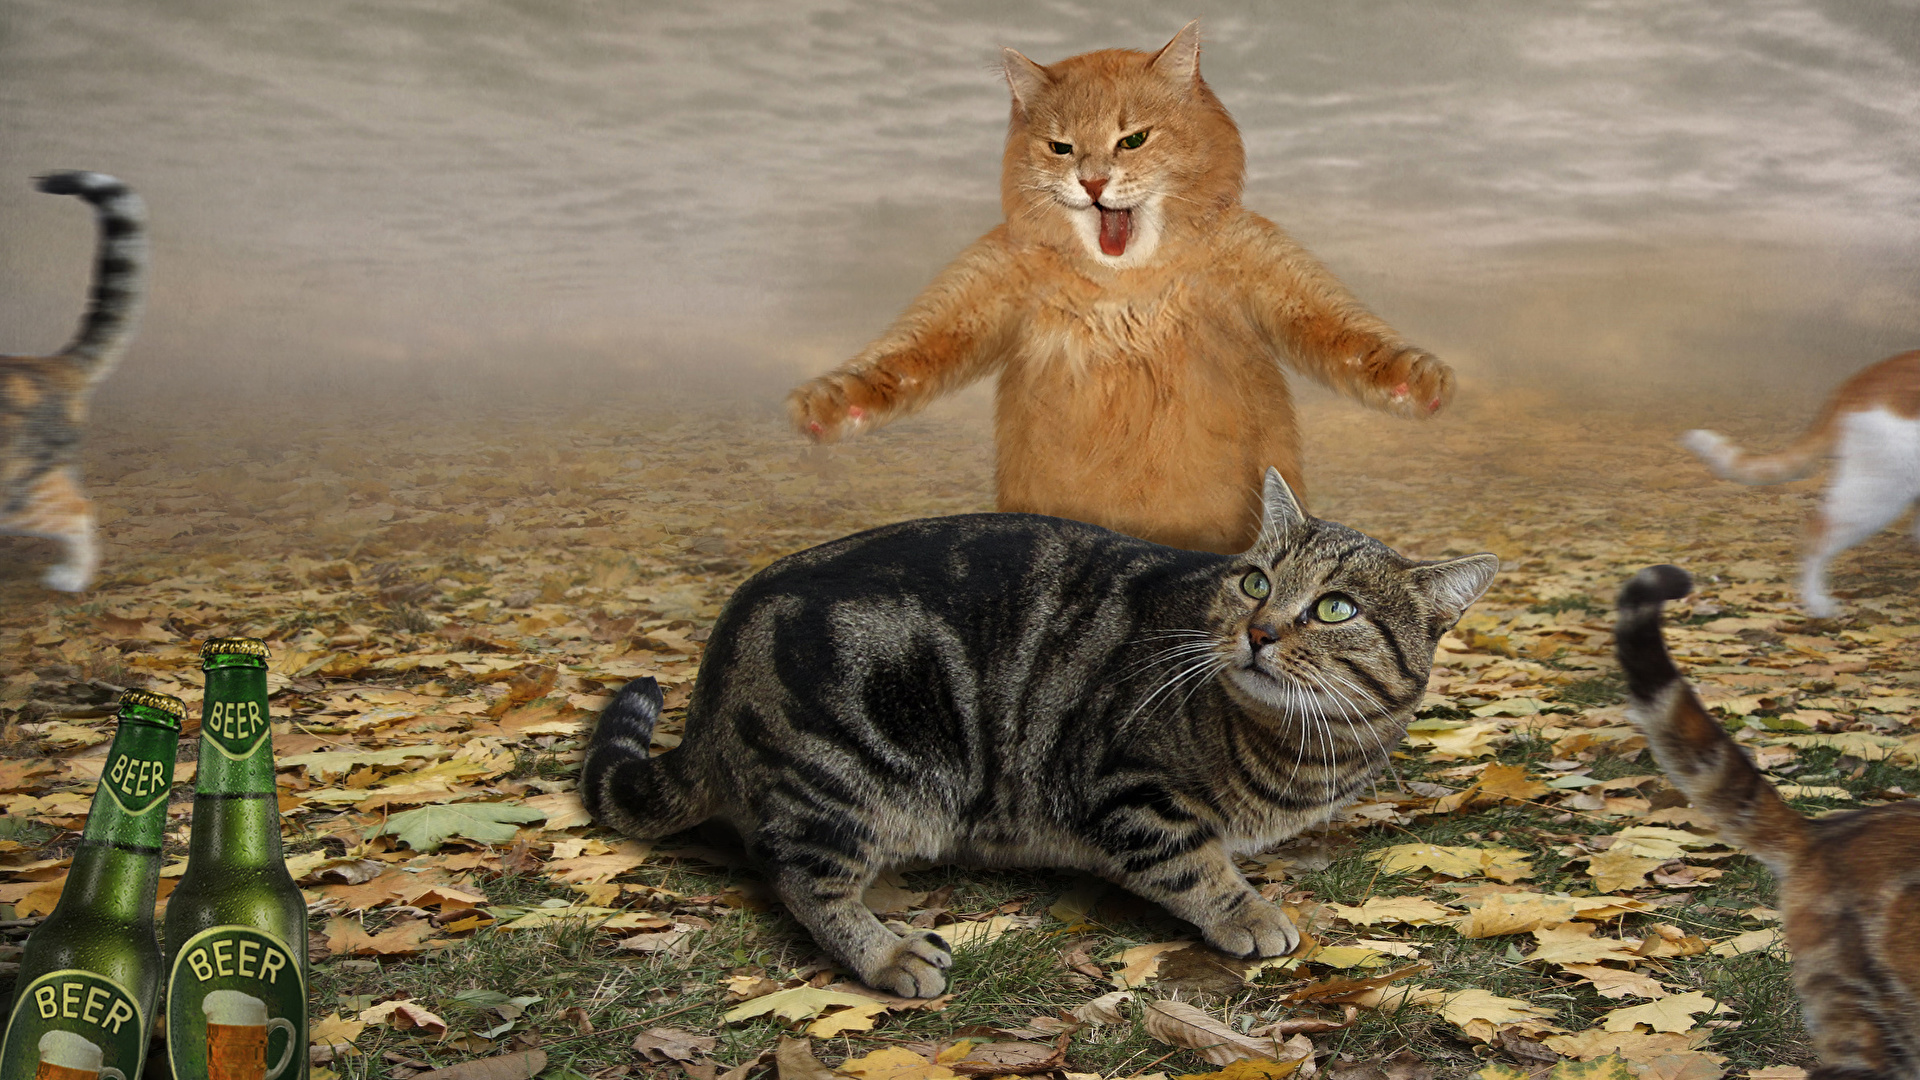 壁紙 1920x1080 飼い猫 恐怖 叫ぶ おもしろい 動物 ダウンロード 写真